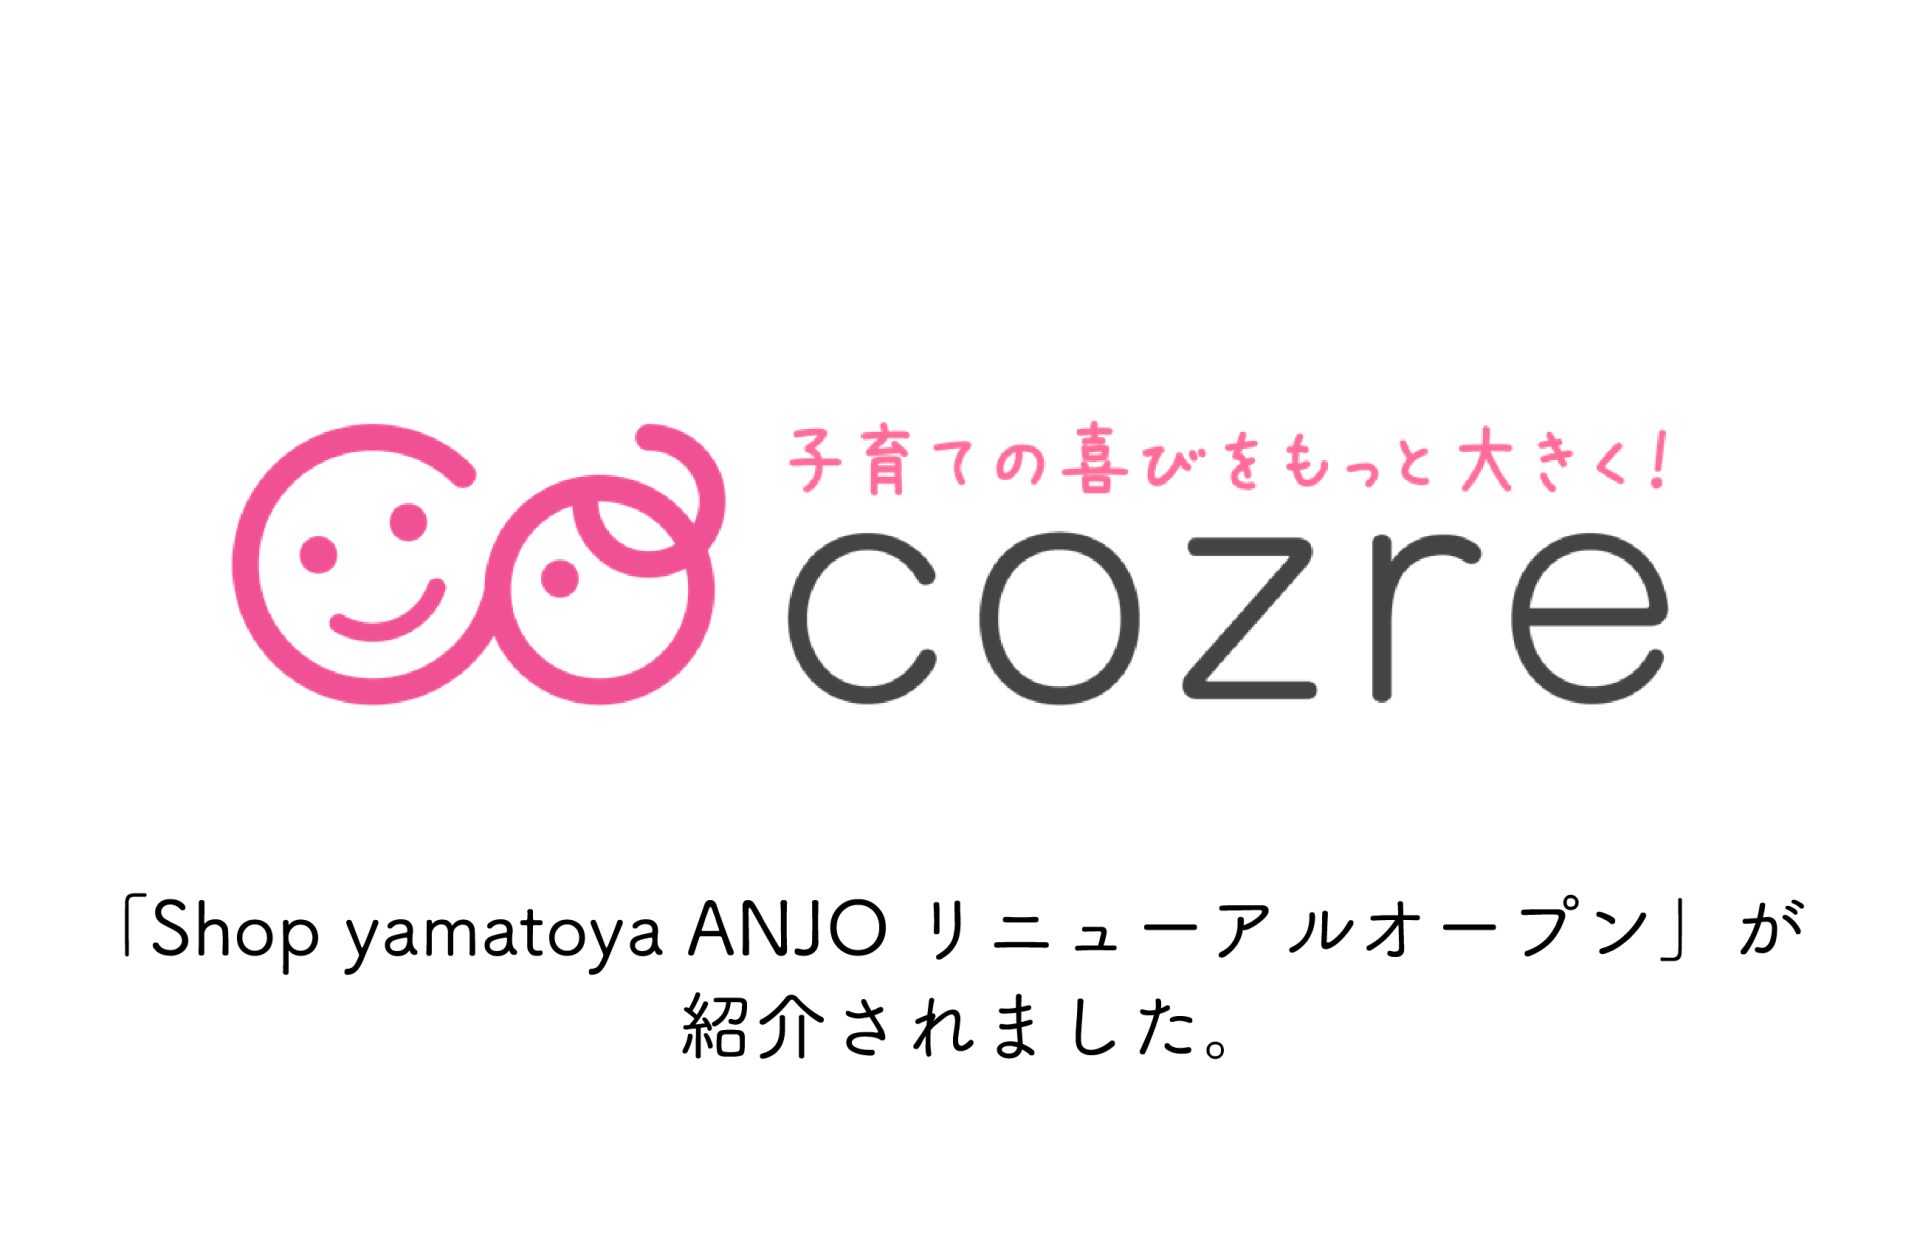 「Shop yamatoya ANJOリニューアルオープン」をcozre（コズレ）でご紹介いただきました